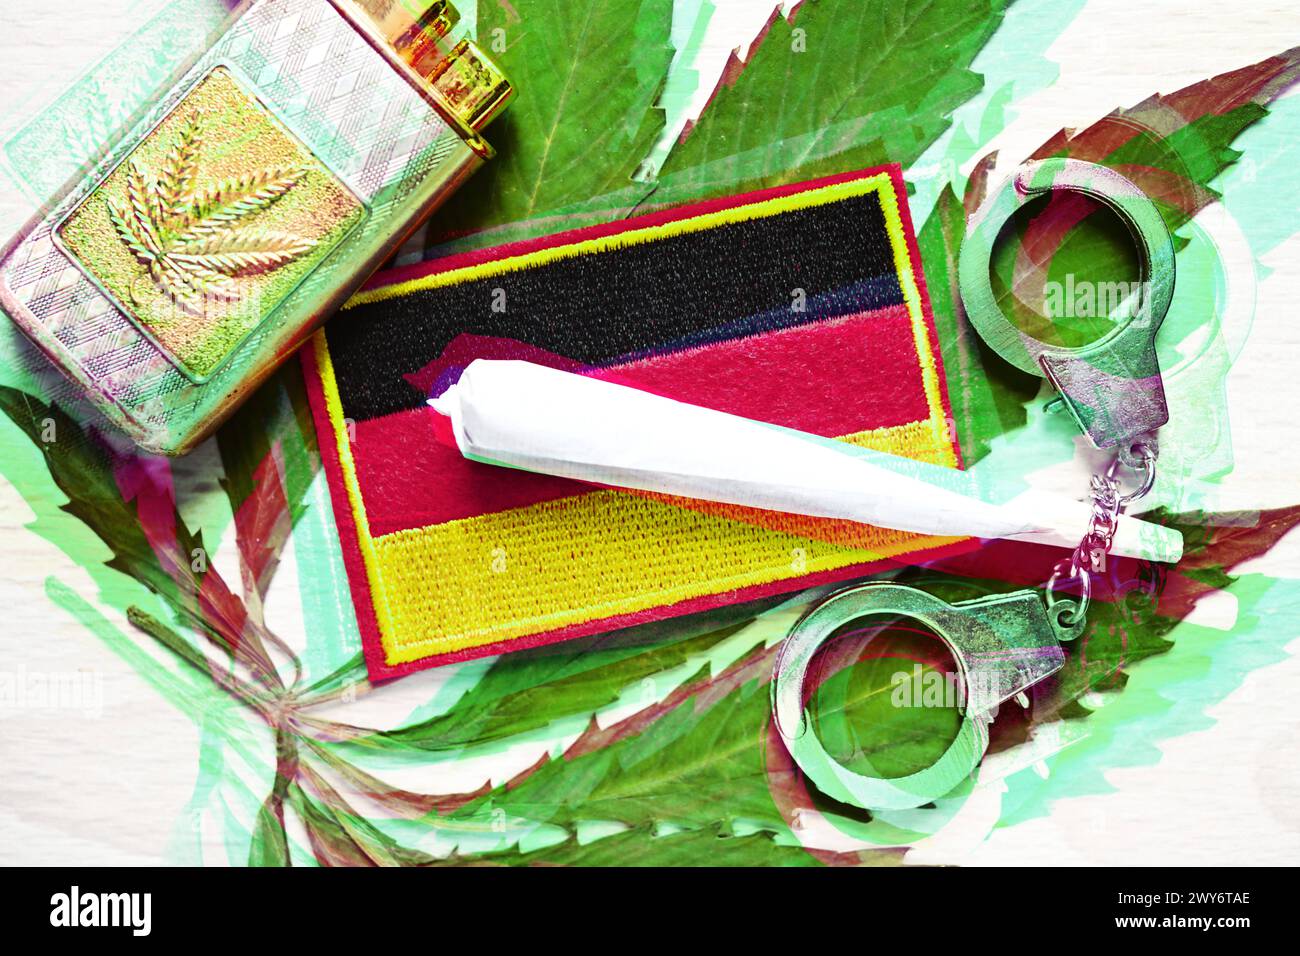 Joint und Deutschland-Fahne auf Cannabis-Blatt mit Handschellen, Cannabis-Legalisierung *** bandiera congiunta e Germania su foglia di cannabis con manette, legalizzazione della cannabis Foto Stock